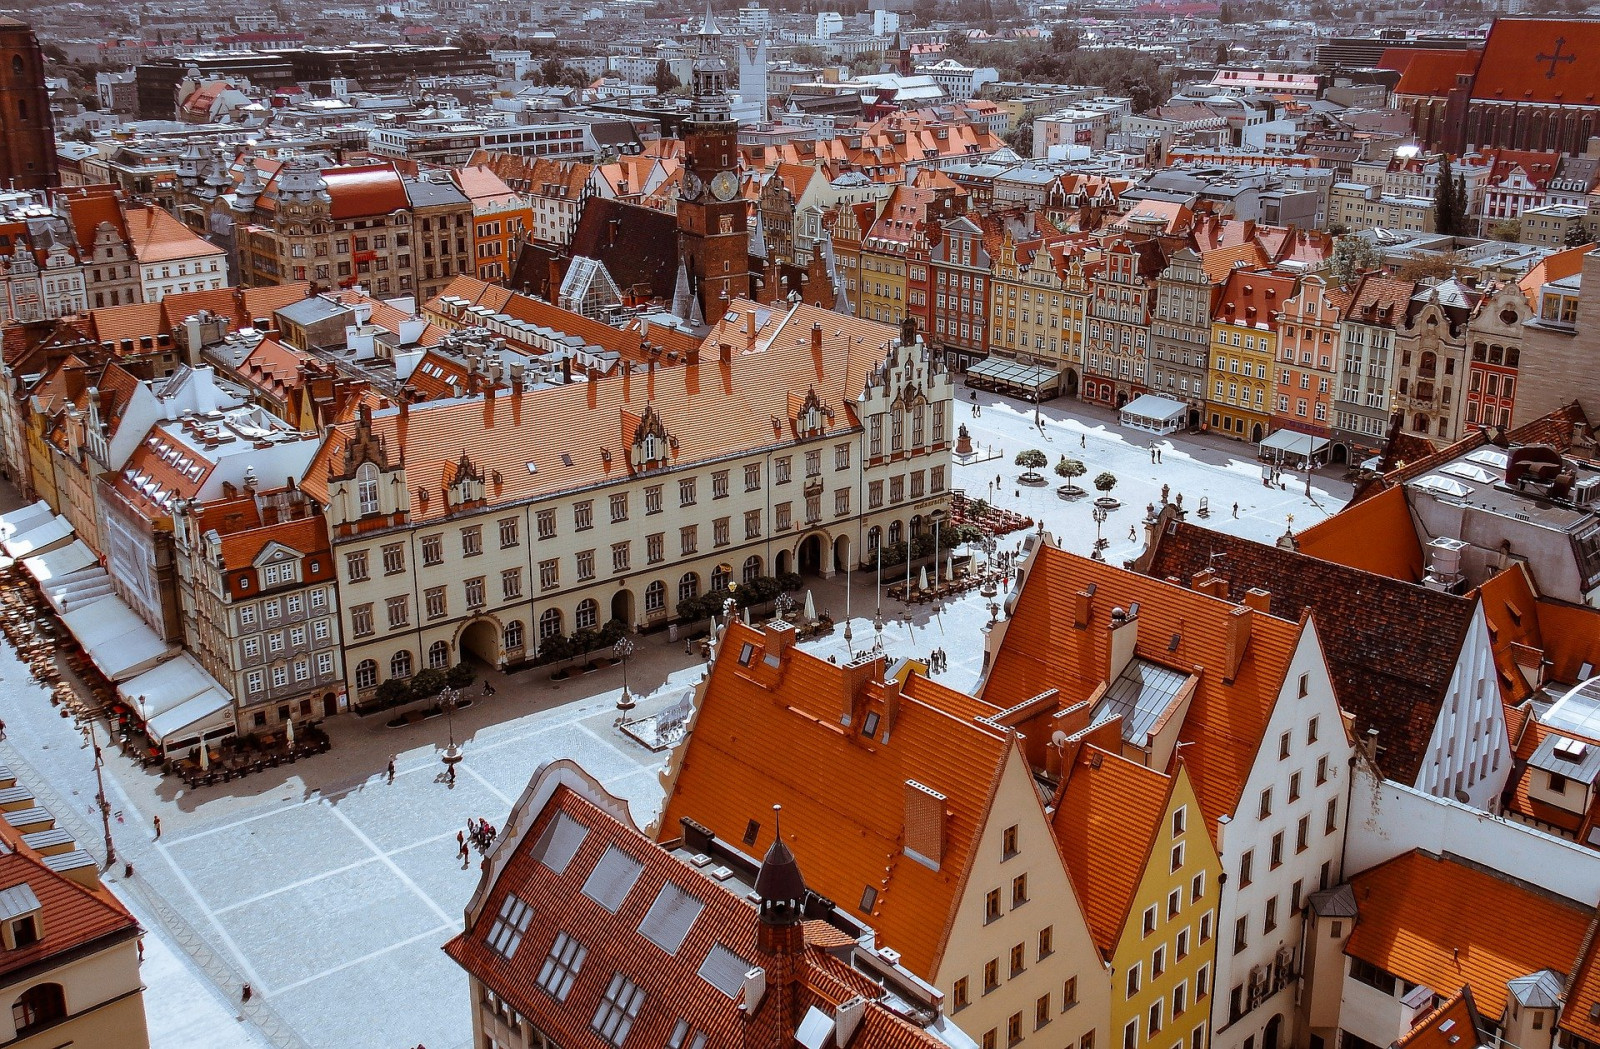 Na zdjęciu znajduje się panorama rynku, we Wrocławiu. Kamienice z czerwonymi dachami stoją wokół rynku. Kamienice i rynek widoczne są z lotu ptaka, z góry.